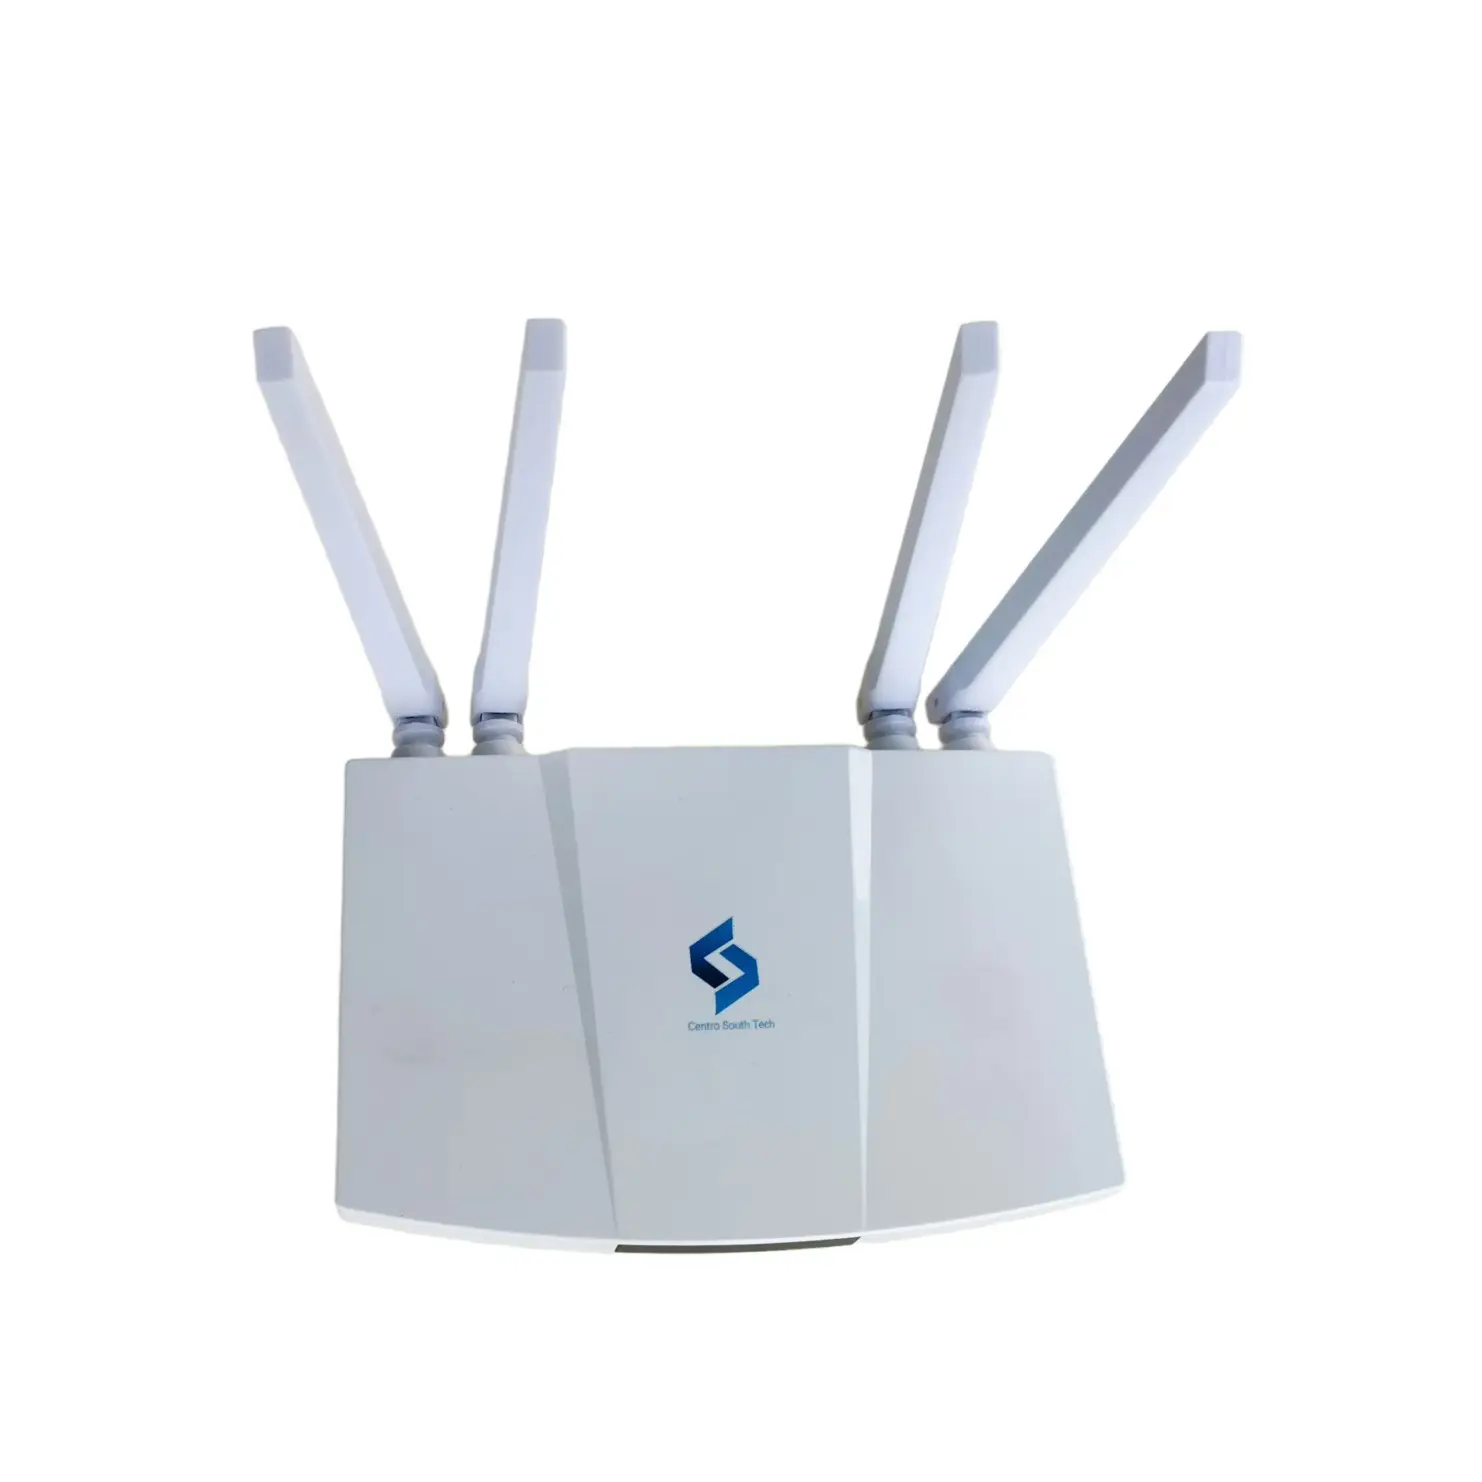 Personalización gratuita 4G CPE WiFi Router con tarjeta SIM 300Mbps Velocidad de datos para una conectividad de red confiable B1/B3/B5/B8